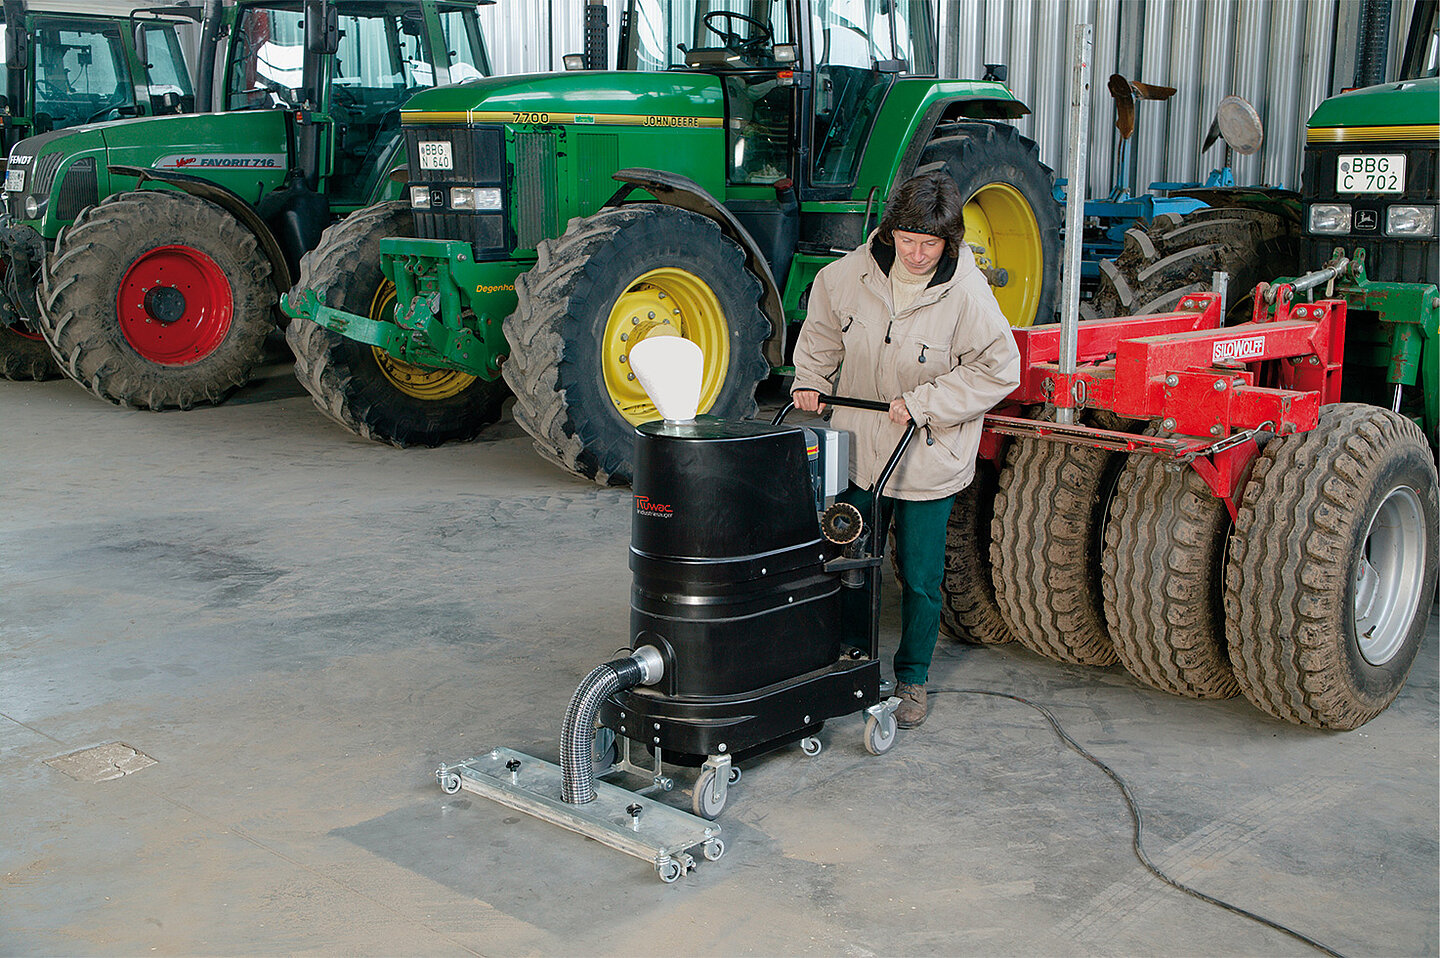 Ruwac Industriesauger mit Drehstromantrieb DS1220 für StaubEx-Bereich saugt in der Landwirtschaft Getreide und Kartoffelstäube